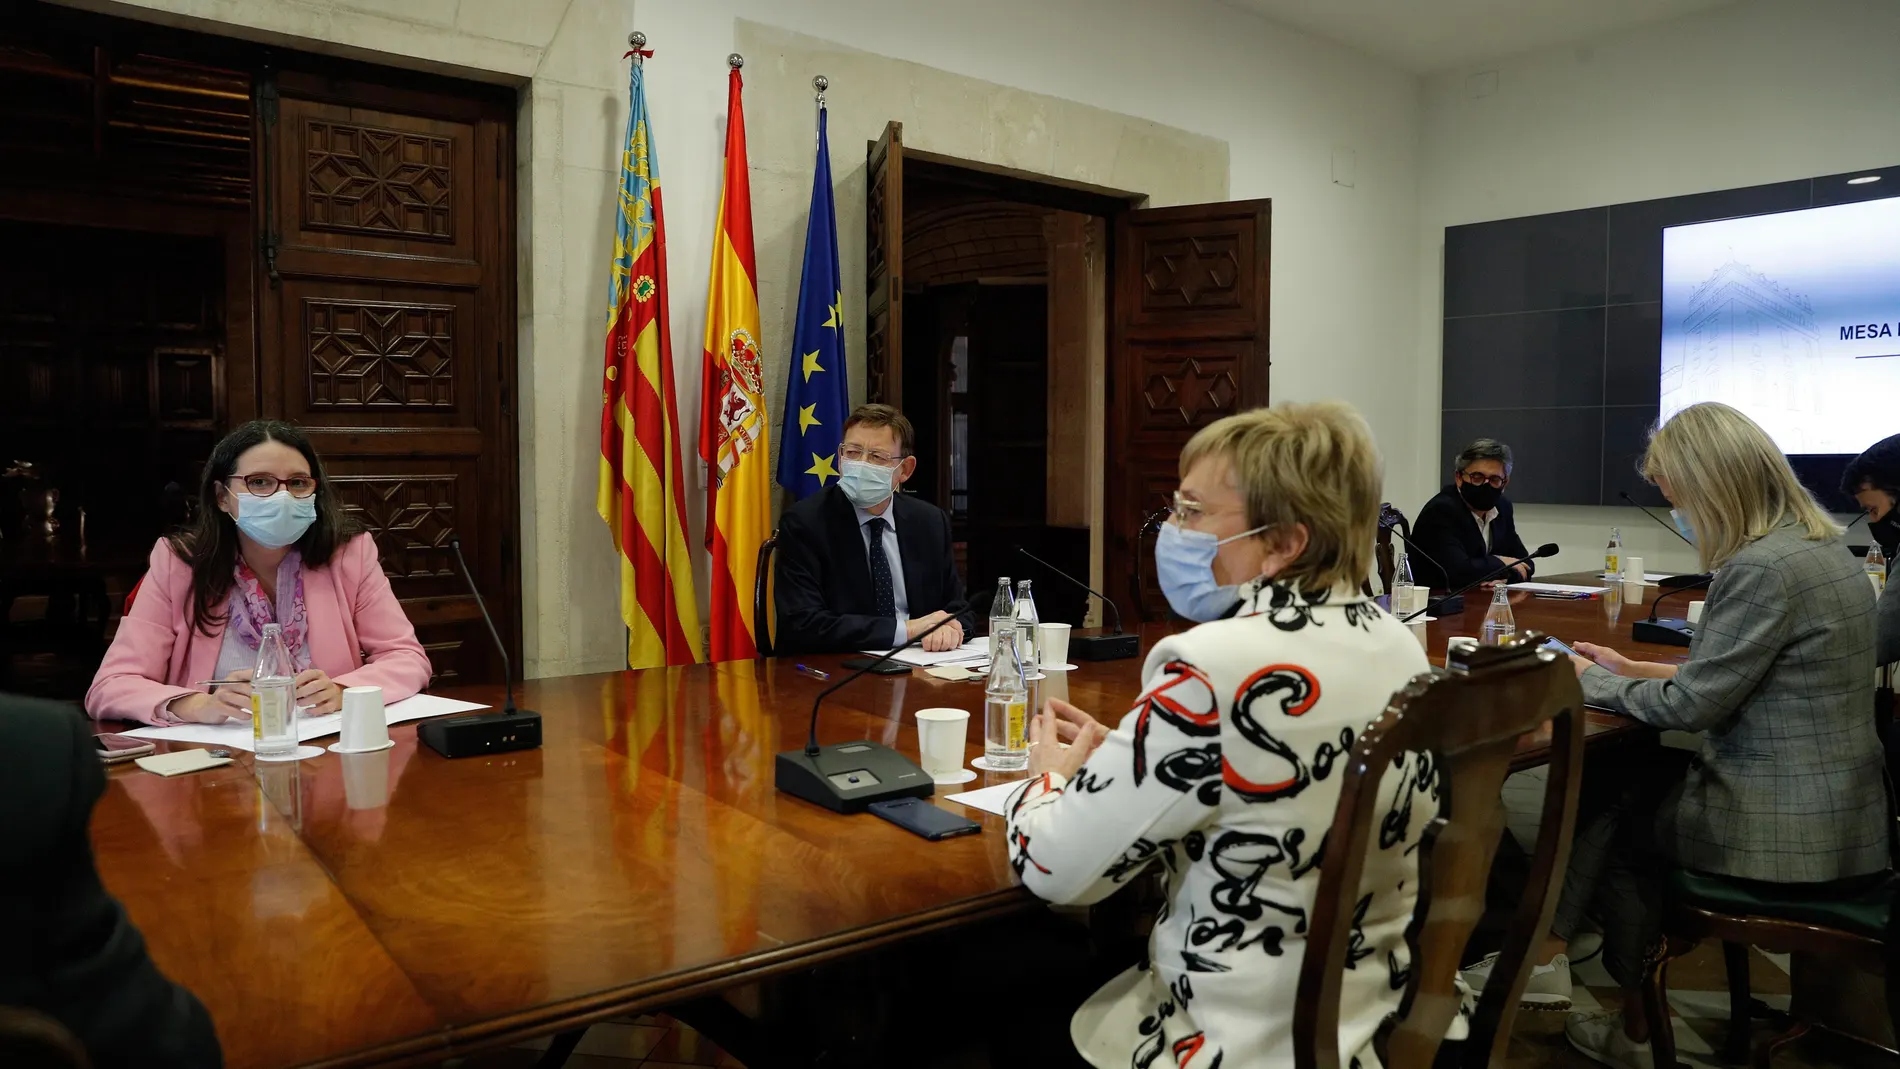 El president de la Generalitat, Ximo Puig (c), preside la reunión de la Mesa Interdepartamental para la Prevención y Actuación ante la covid-19, que prevé acordar la prórroga de las actuales restricciones contra la pandemia